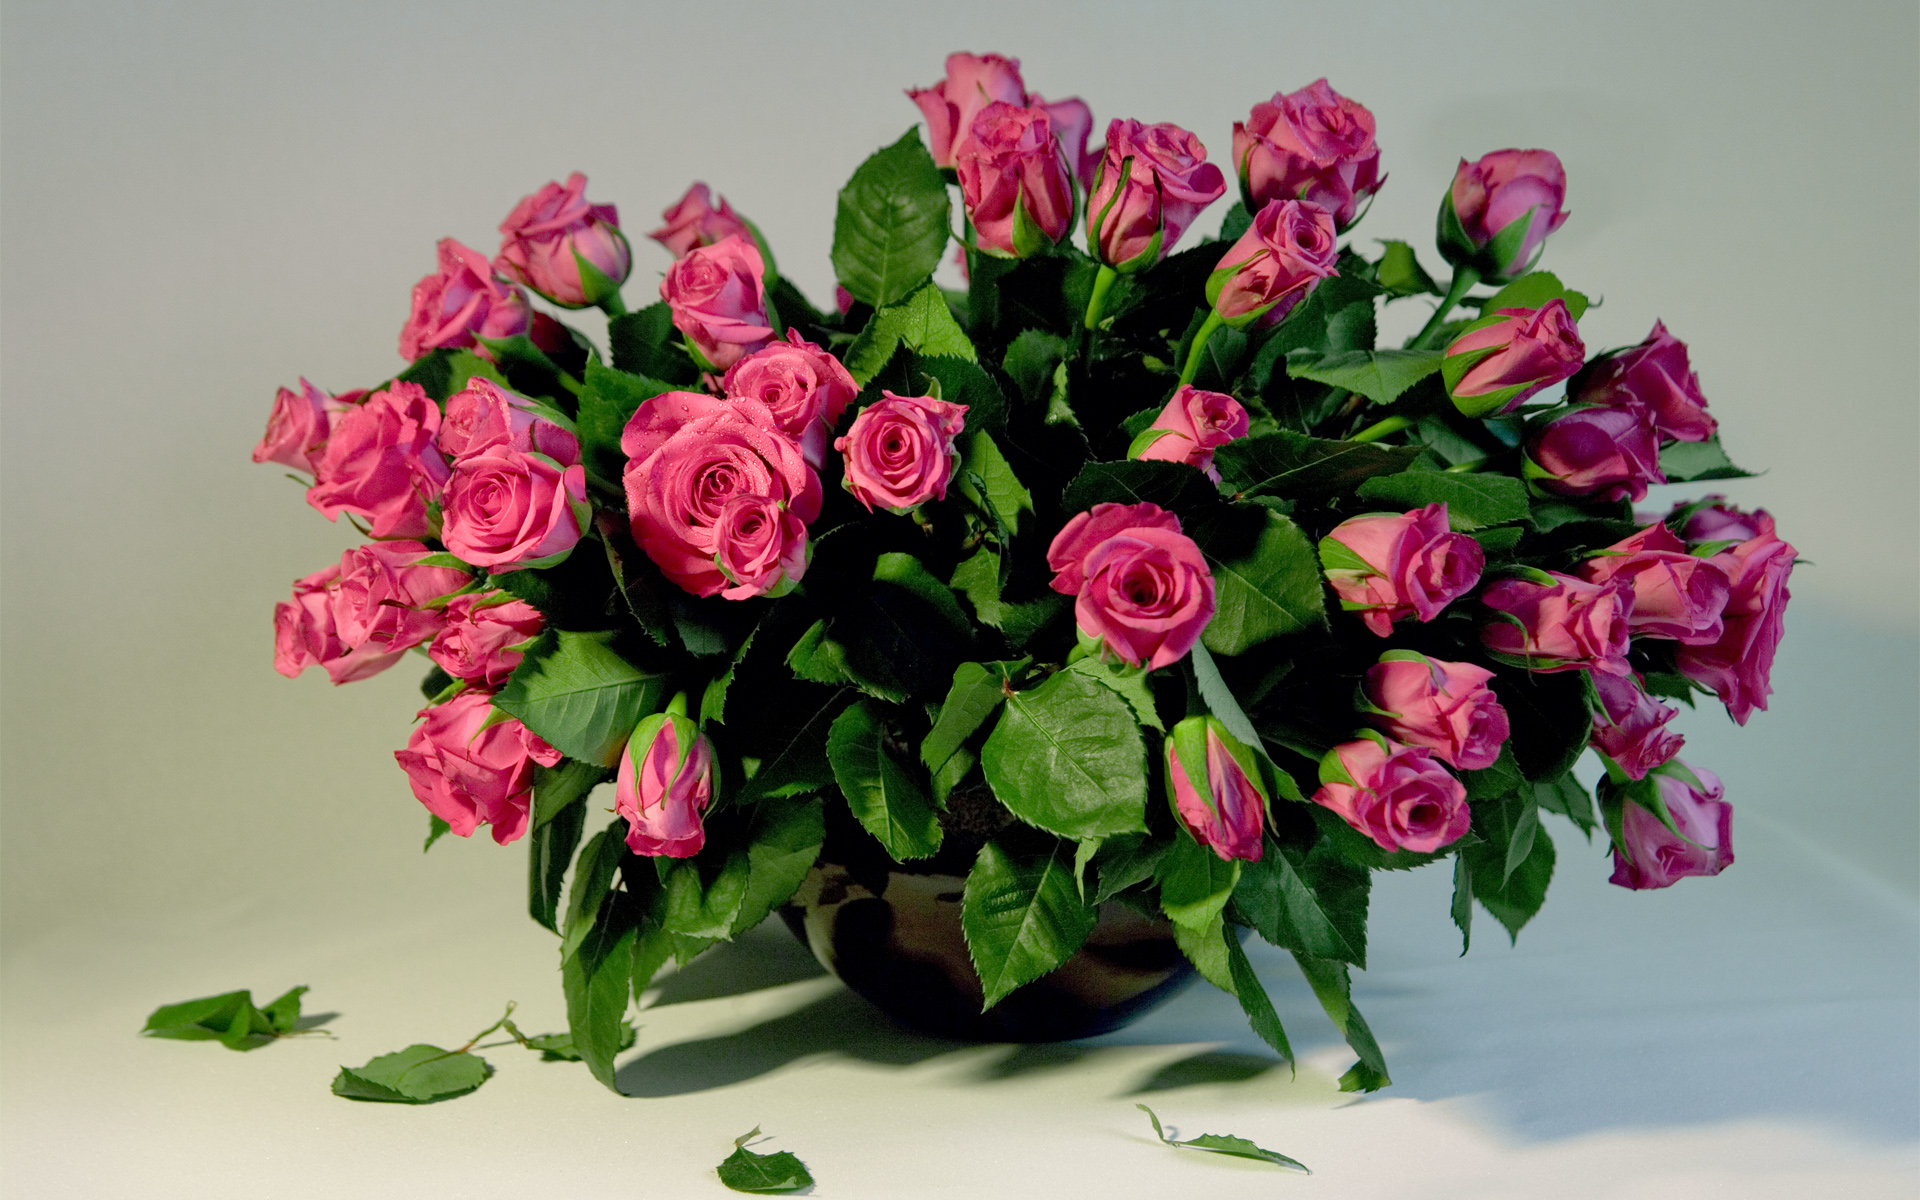 8 март менән котлау башкортса. Красивый букет. Шикарный букет цветов. Красивый букет роз.